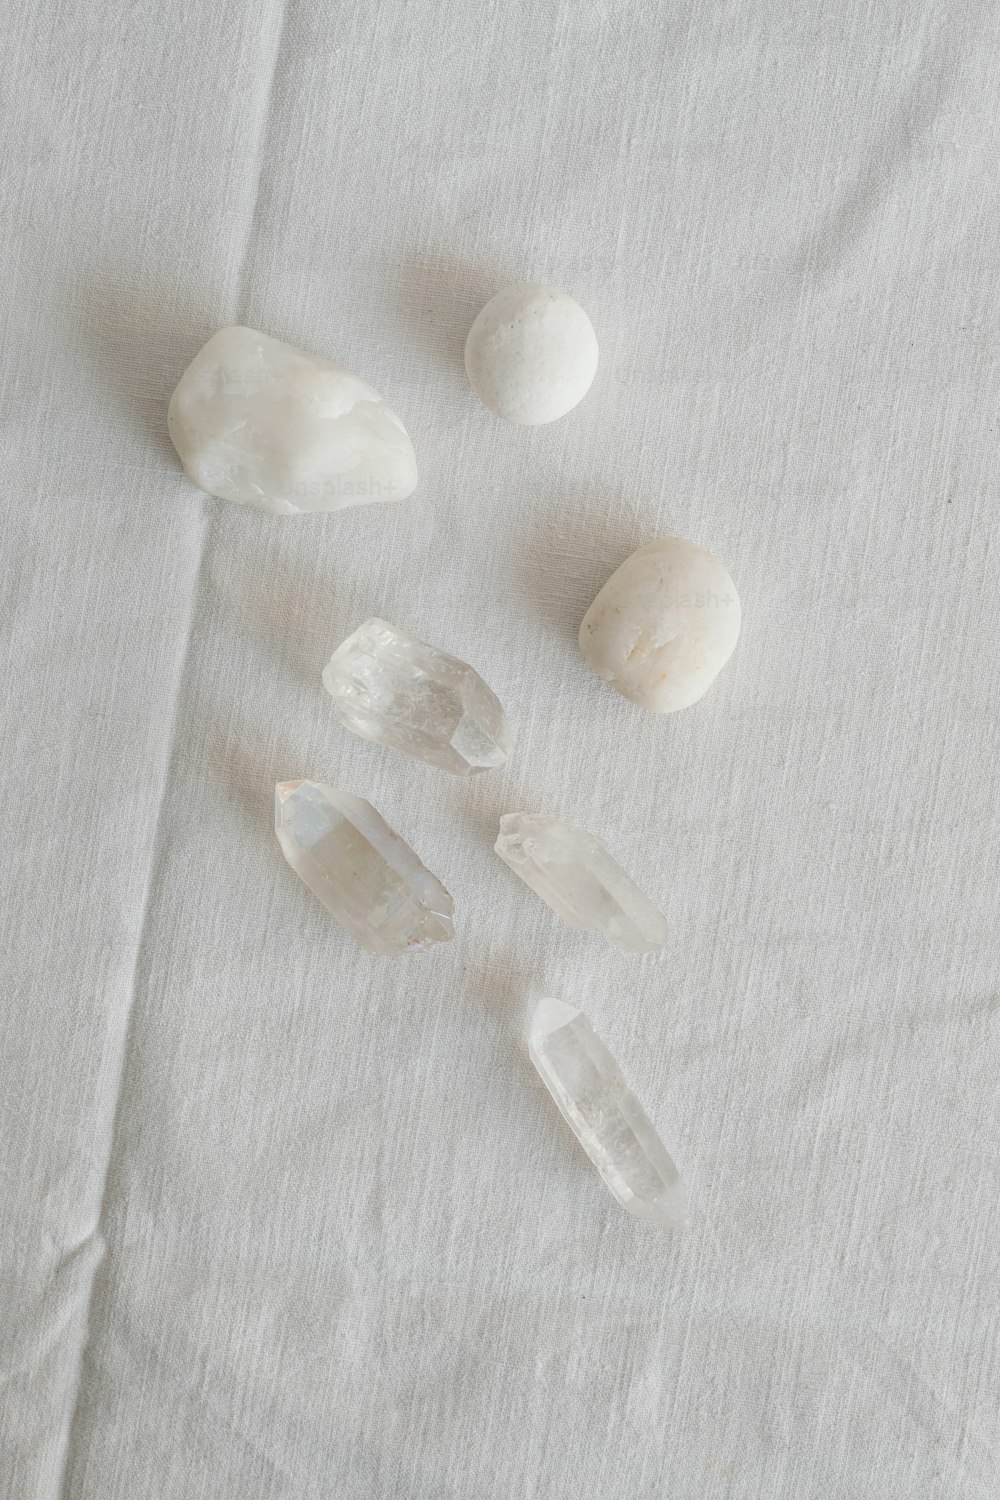 um grupo de pedras sentado em cima de um pano branco